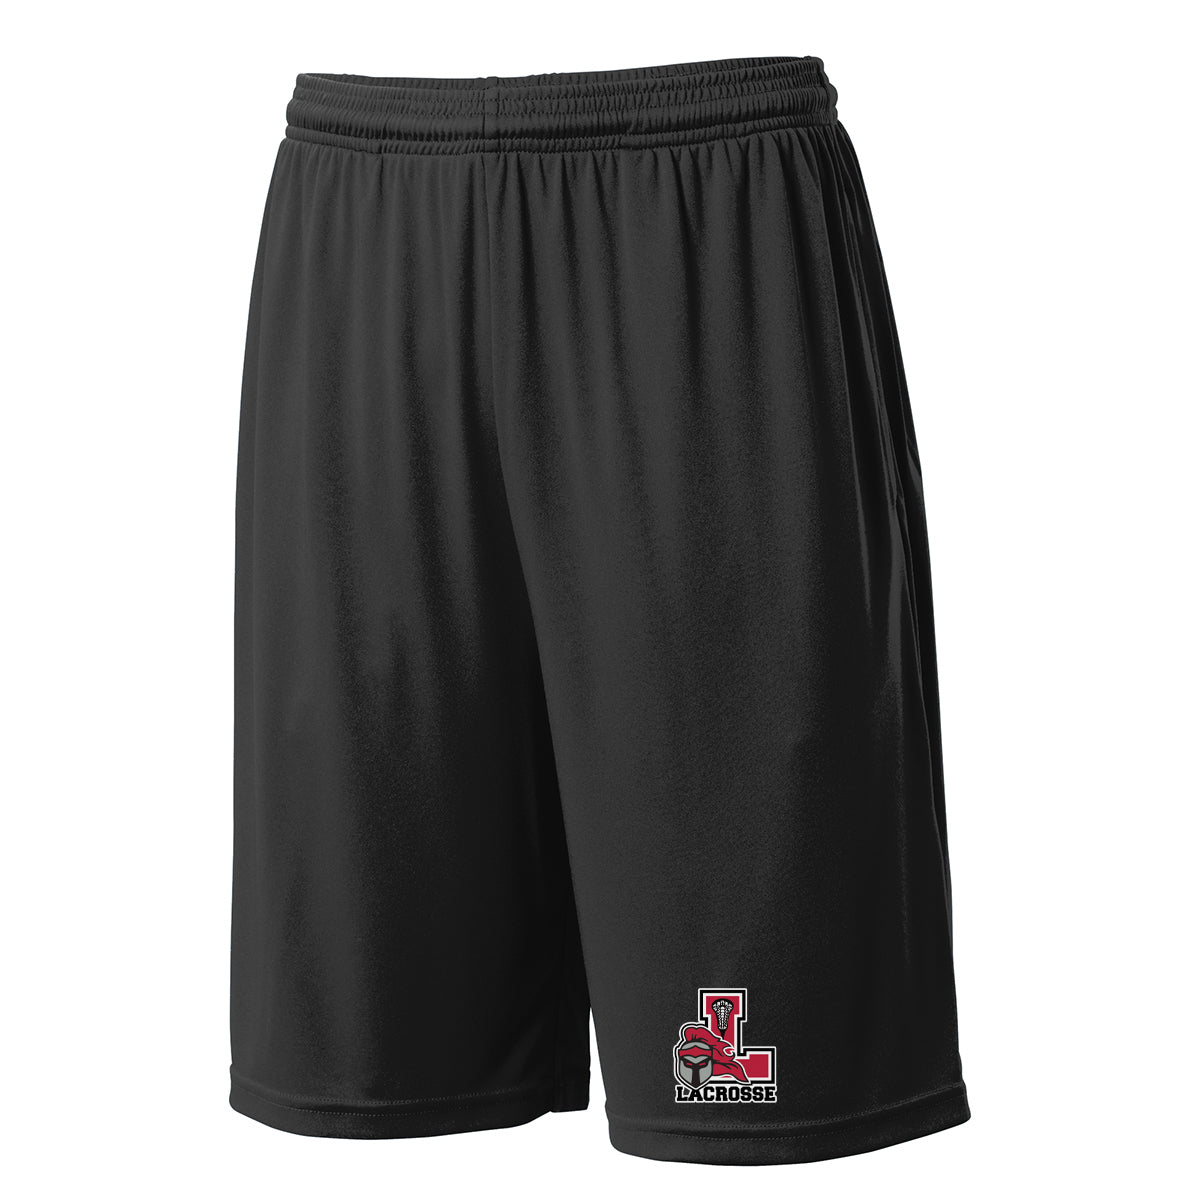 Lancaster Legends Lacrosse Black Shorts